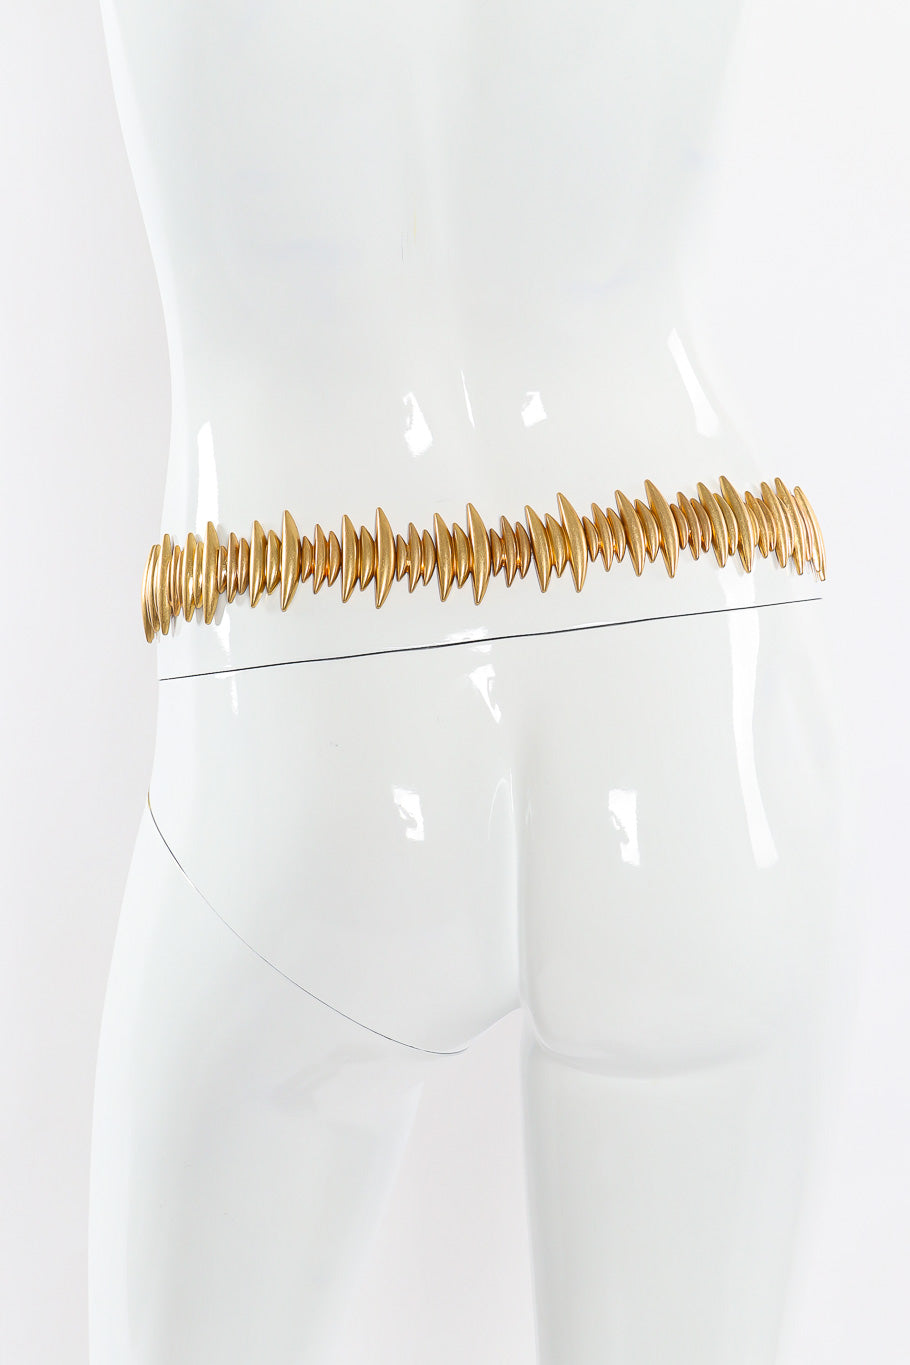 Gold metal fish spine vintage chain belt on mannequin back @recessla